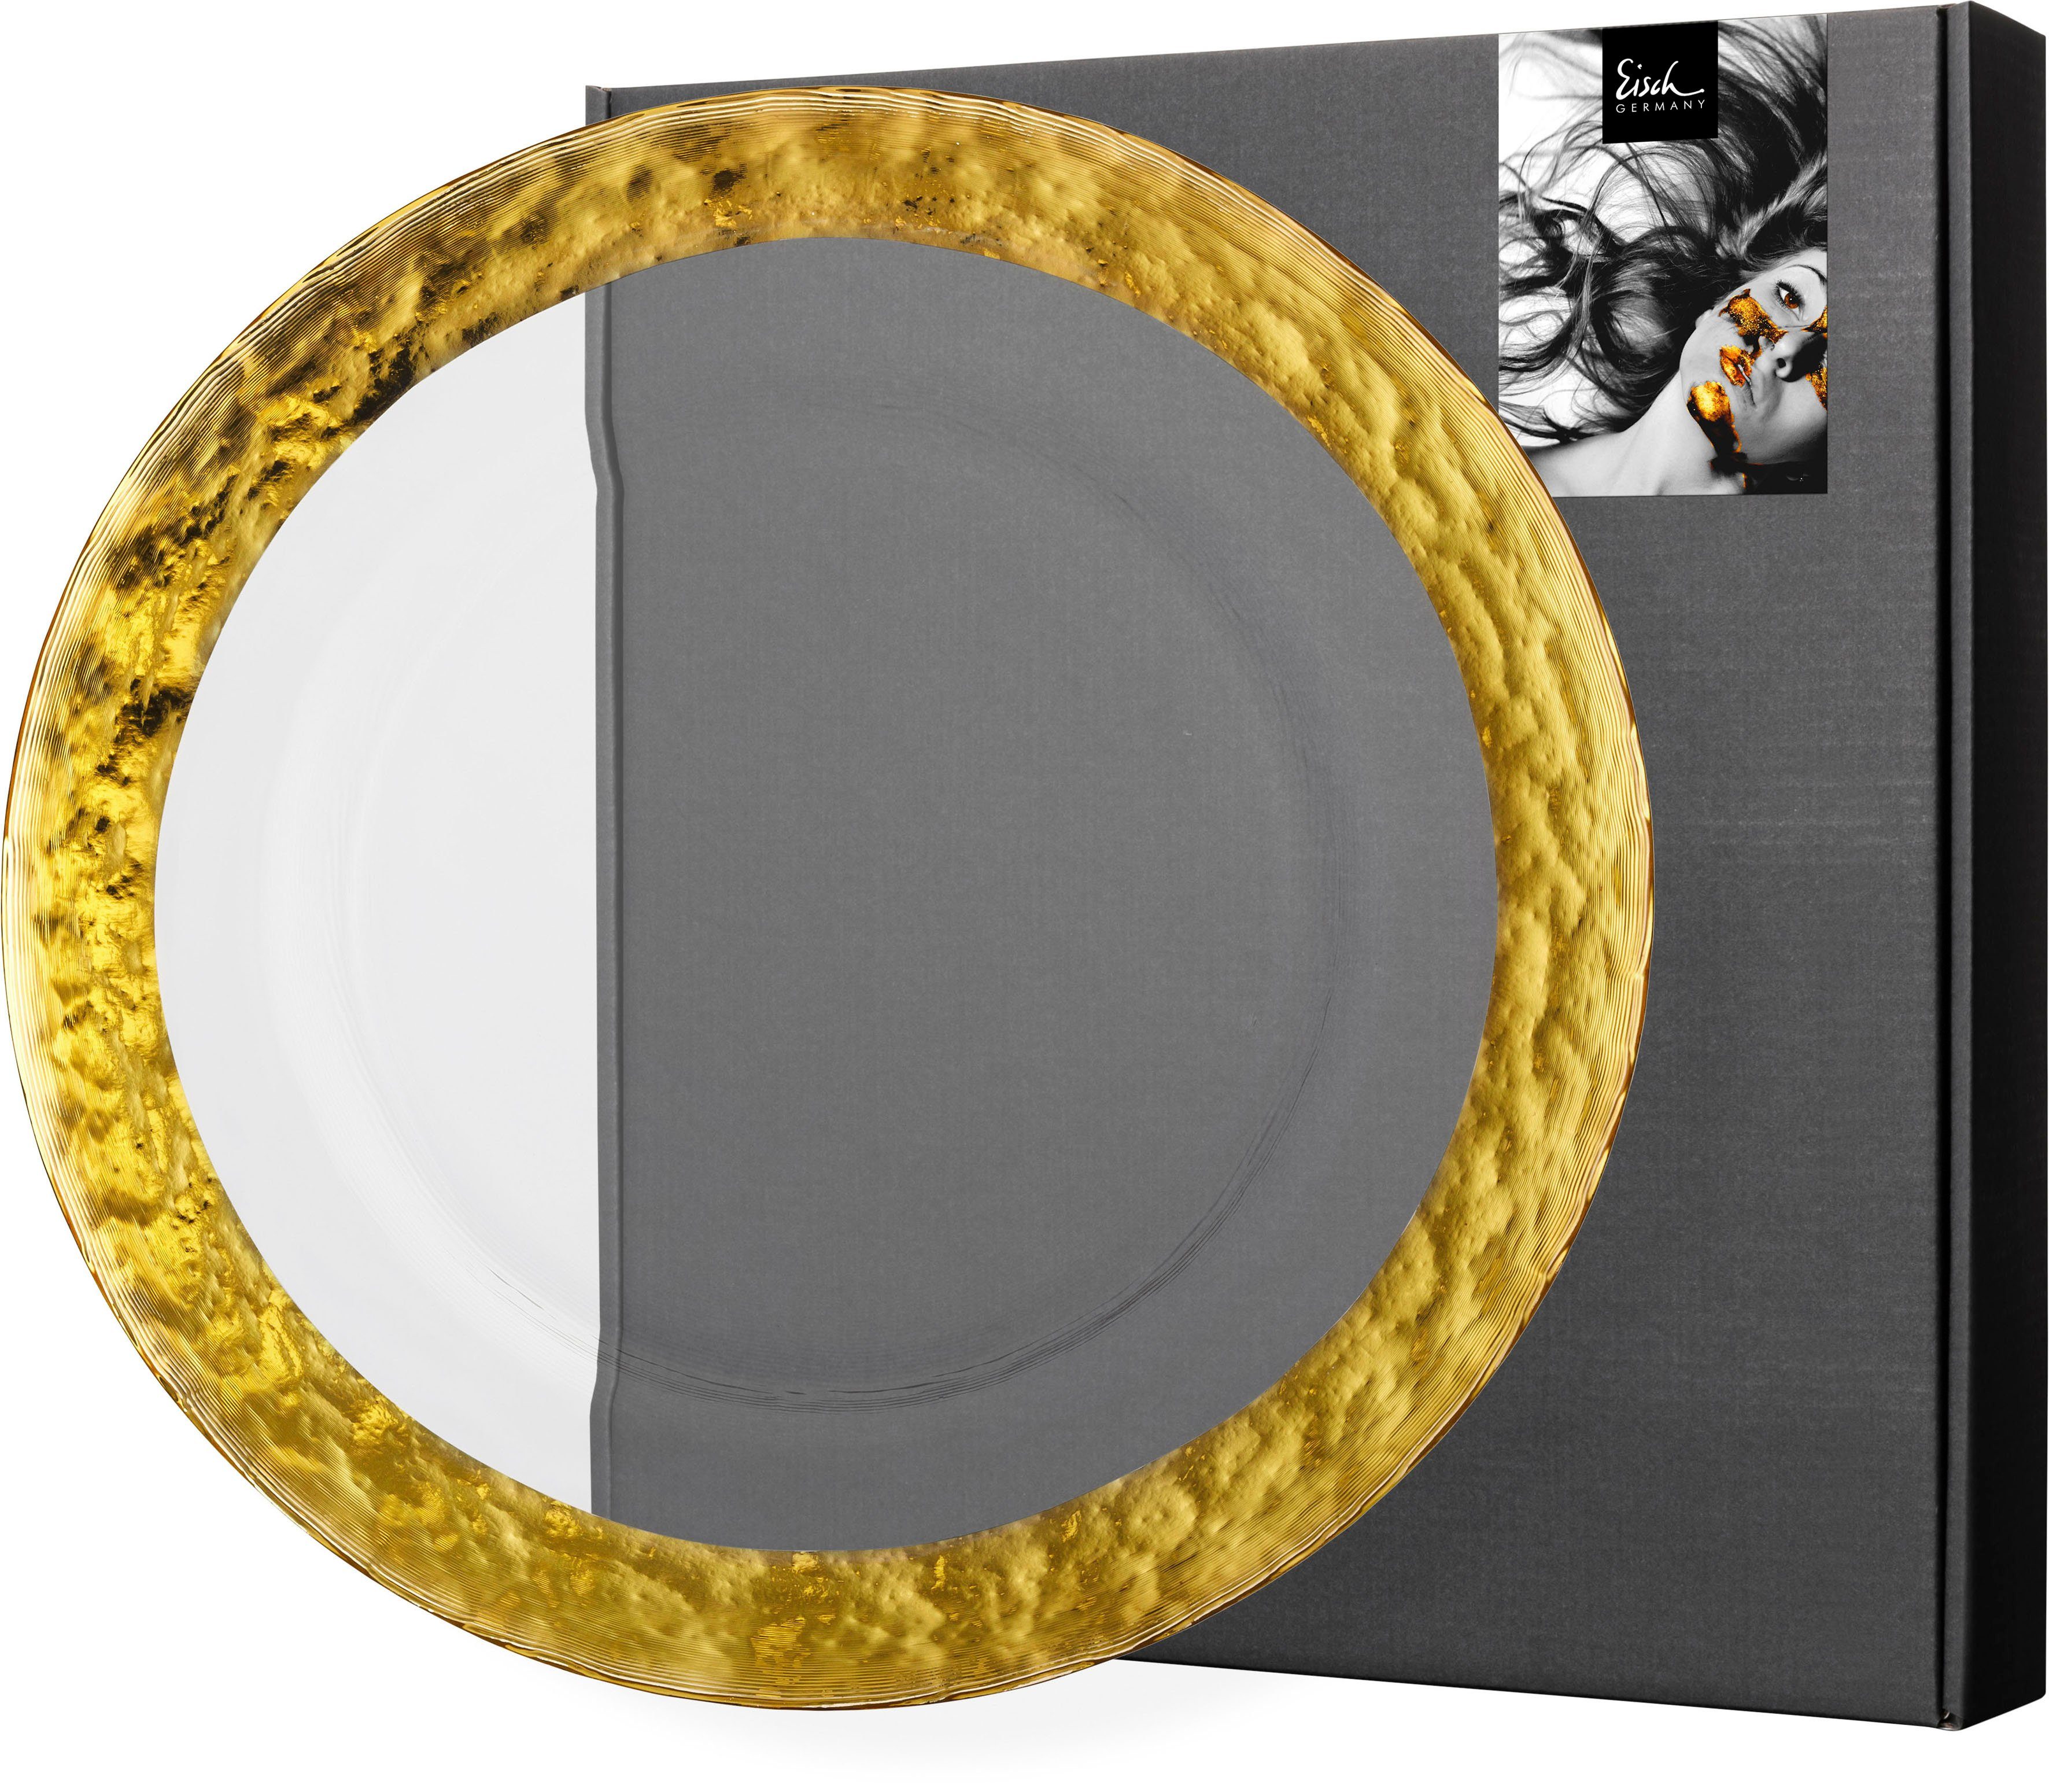 Eisch Platzteller COLOMBO GOLD, 1-tlg., veredelt mit 24karätigem Gold, Handarbeit, Ø 34 cm